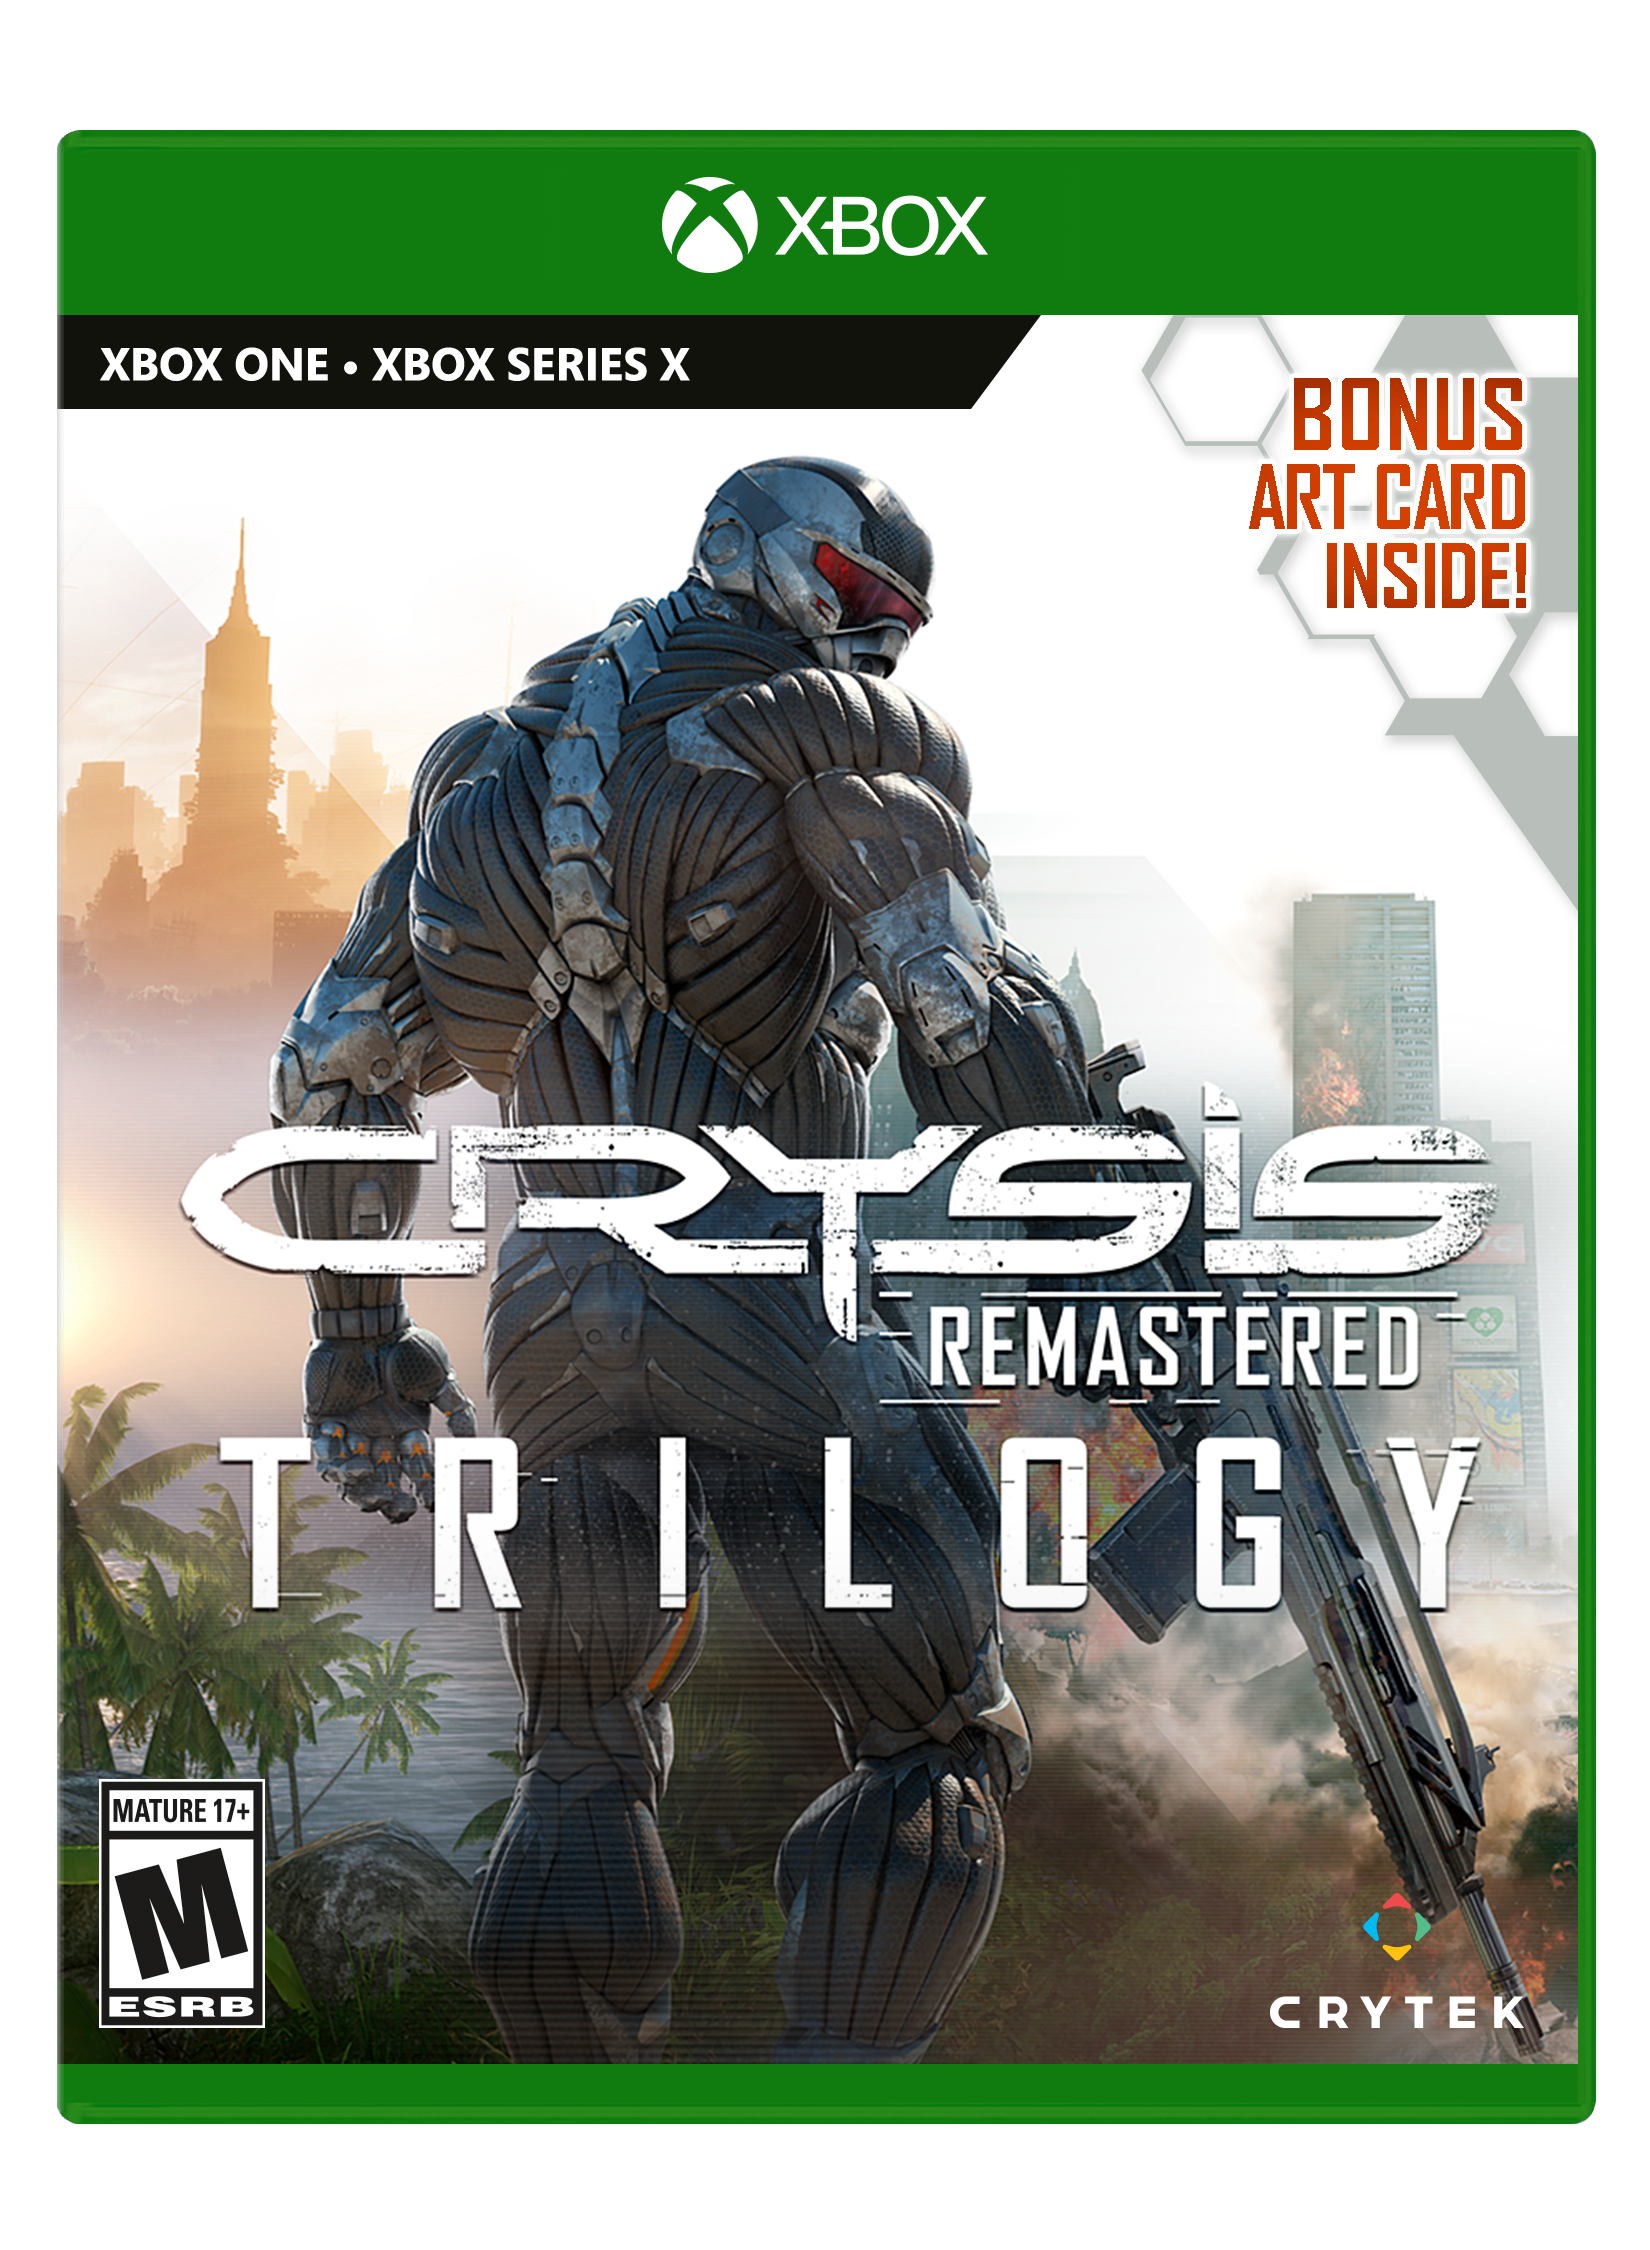 Crysis 3 e Fez são dois dos games gratuitos de agosto da PSN